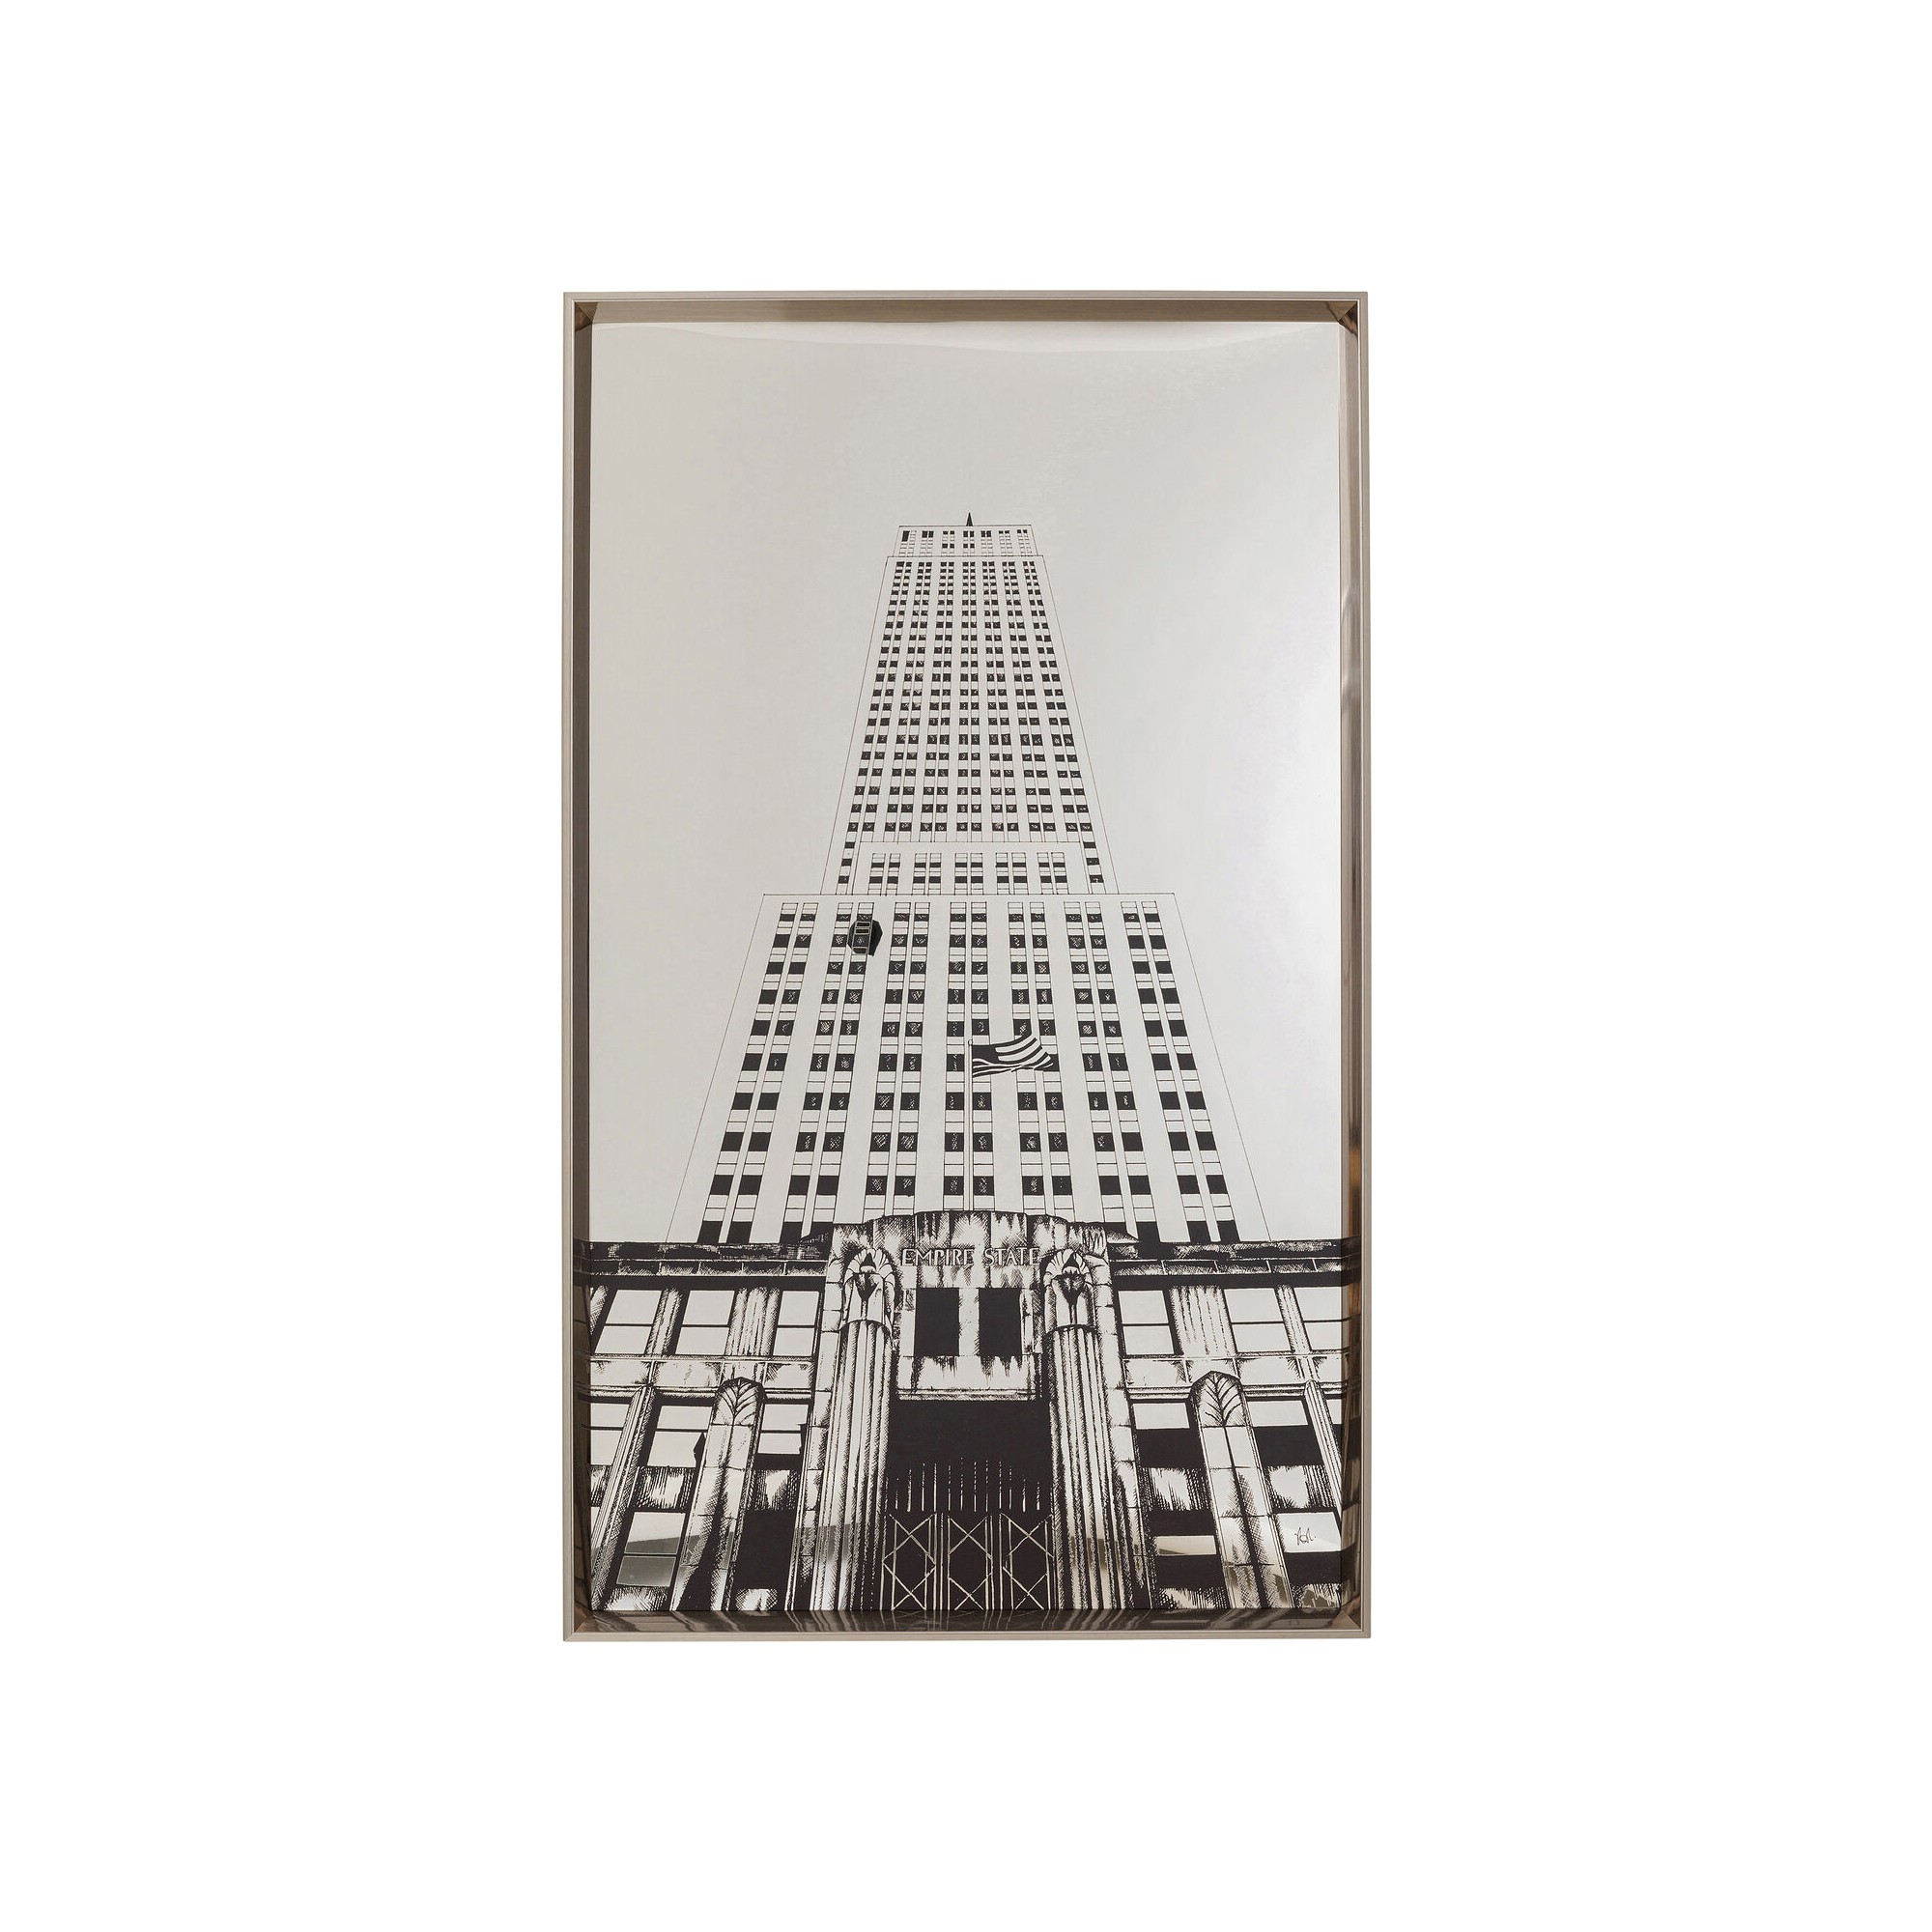 Tableau encadré Empire State Mirror 77x130cm